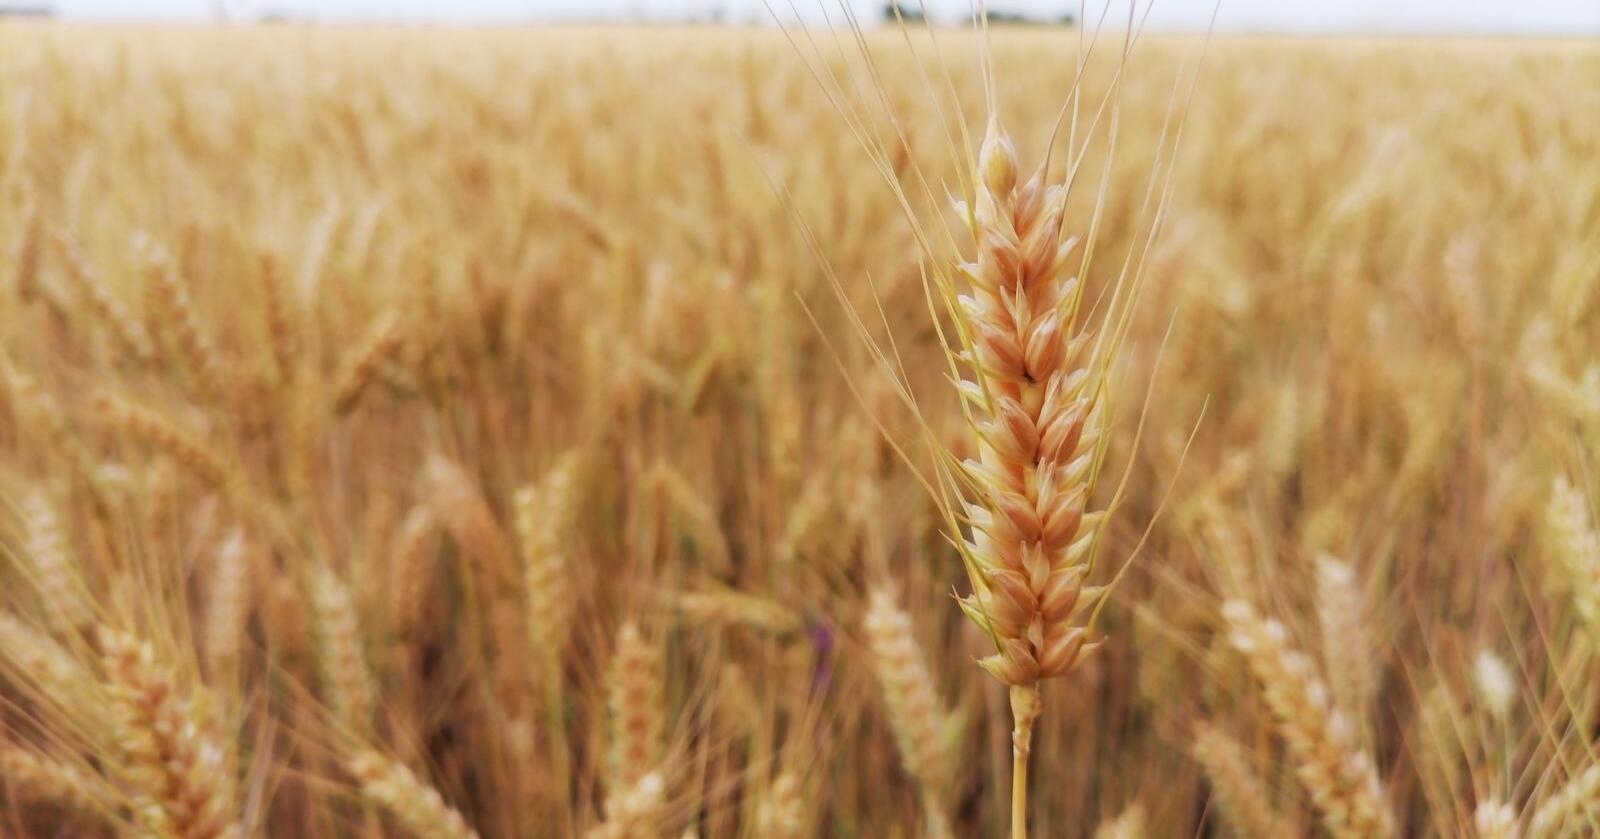 Verdens kornkammer: Verdens største eksportør av hvete og kunstgjødsel har invadert verdens femte største eksportør av hvete. Foto: Mostphotos